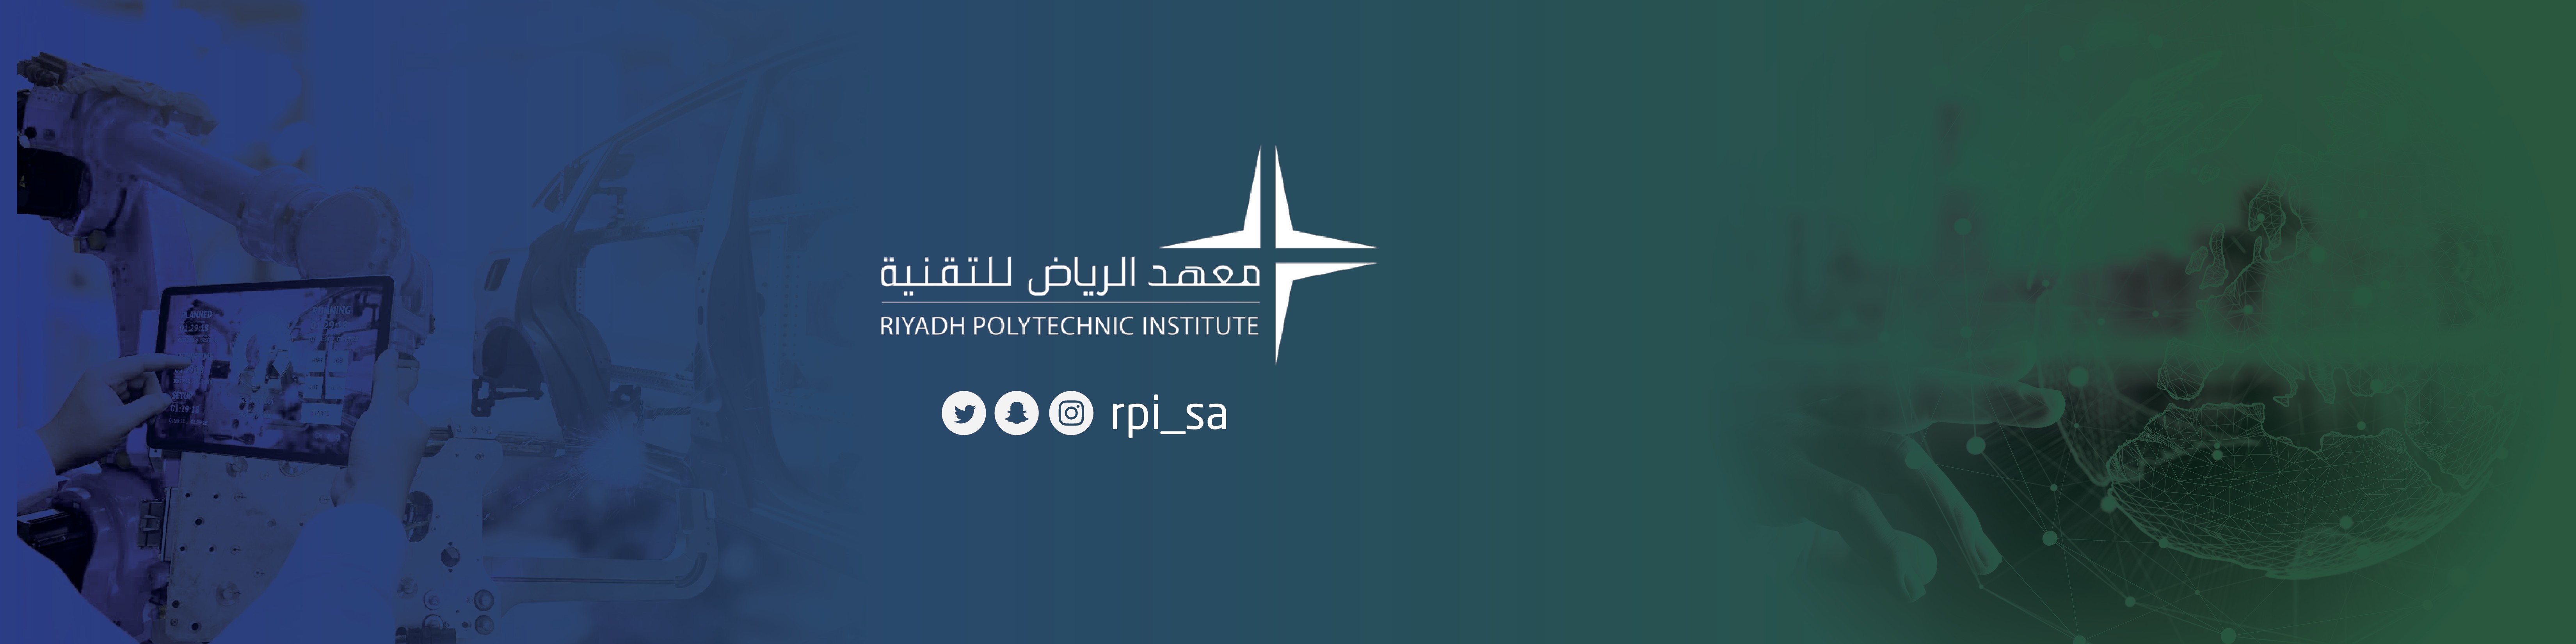 الرياض منتهي معهد بالتوظيف تدريب للتقنية معهد الرياض